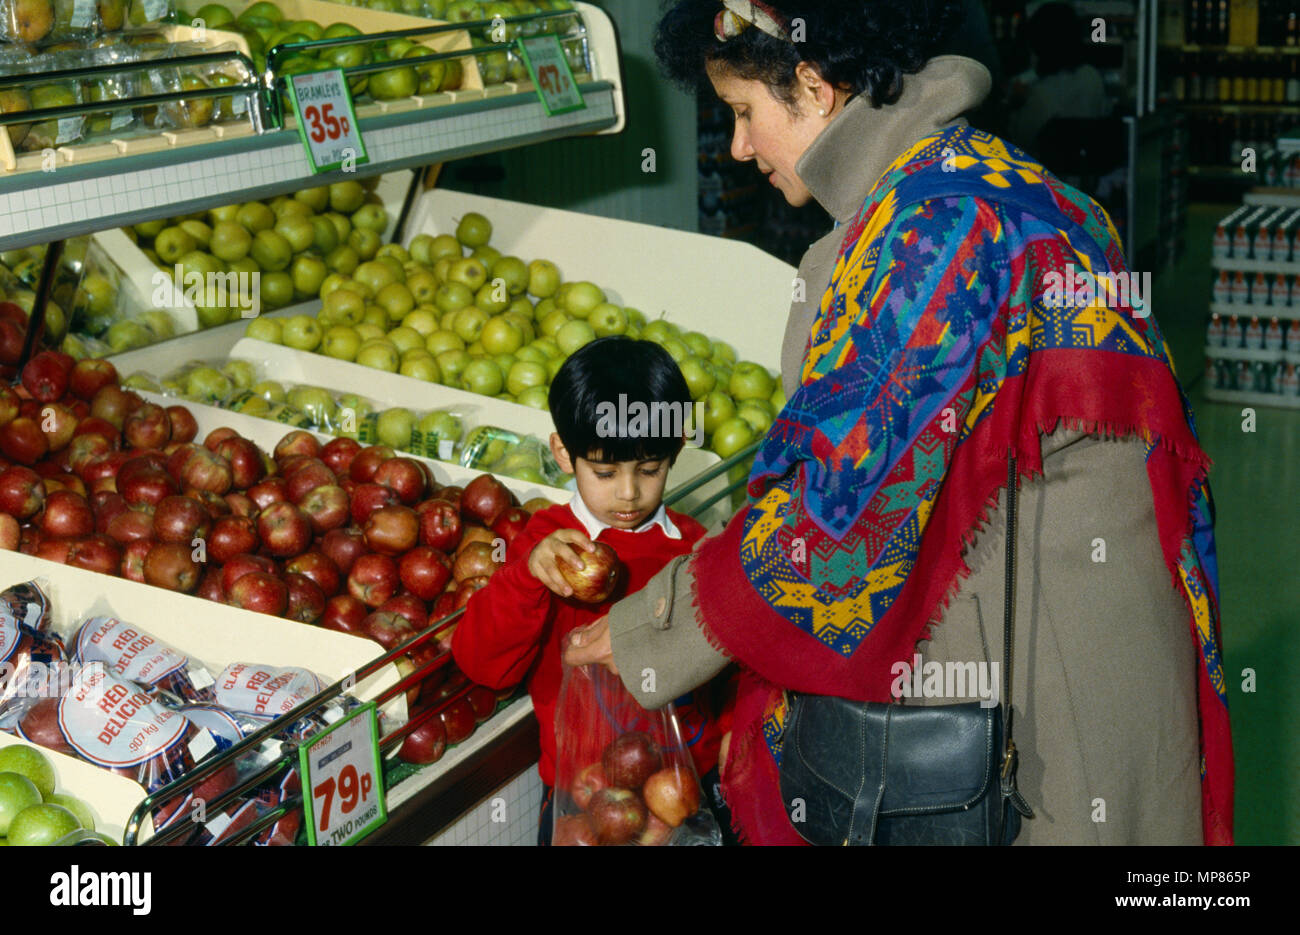 L'alimentation, Shopping, fruits au supermarché. Banque D'Images